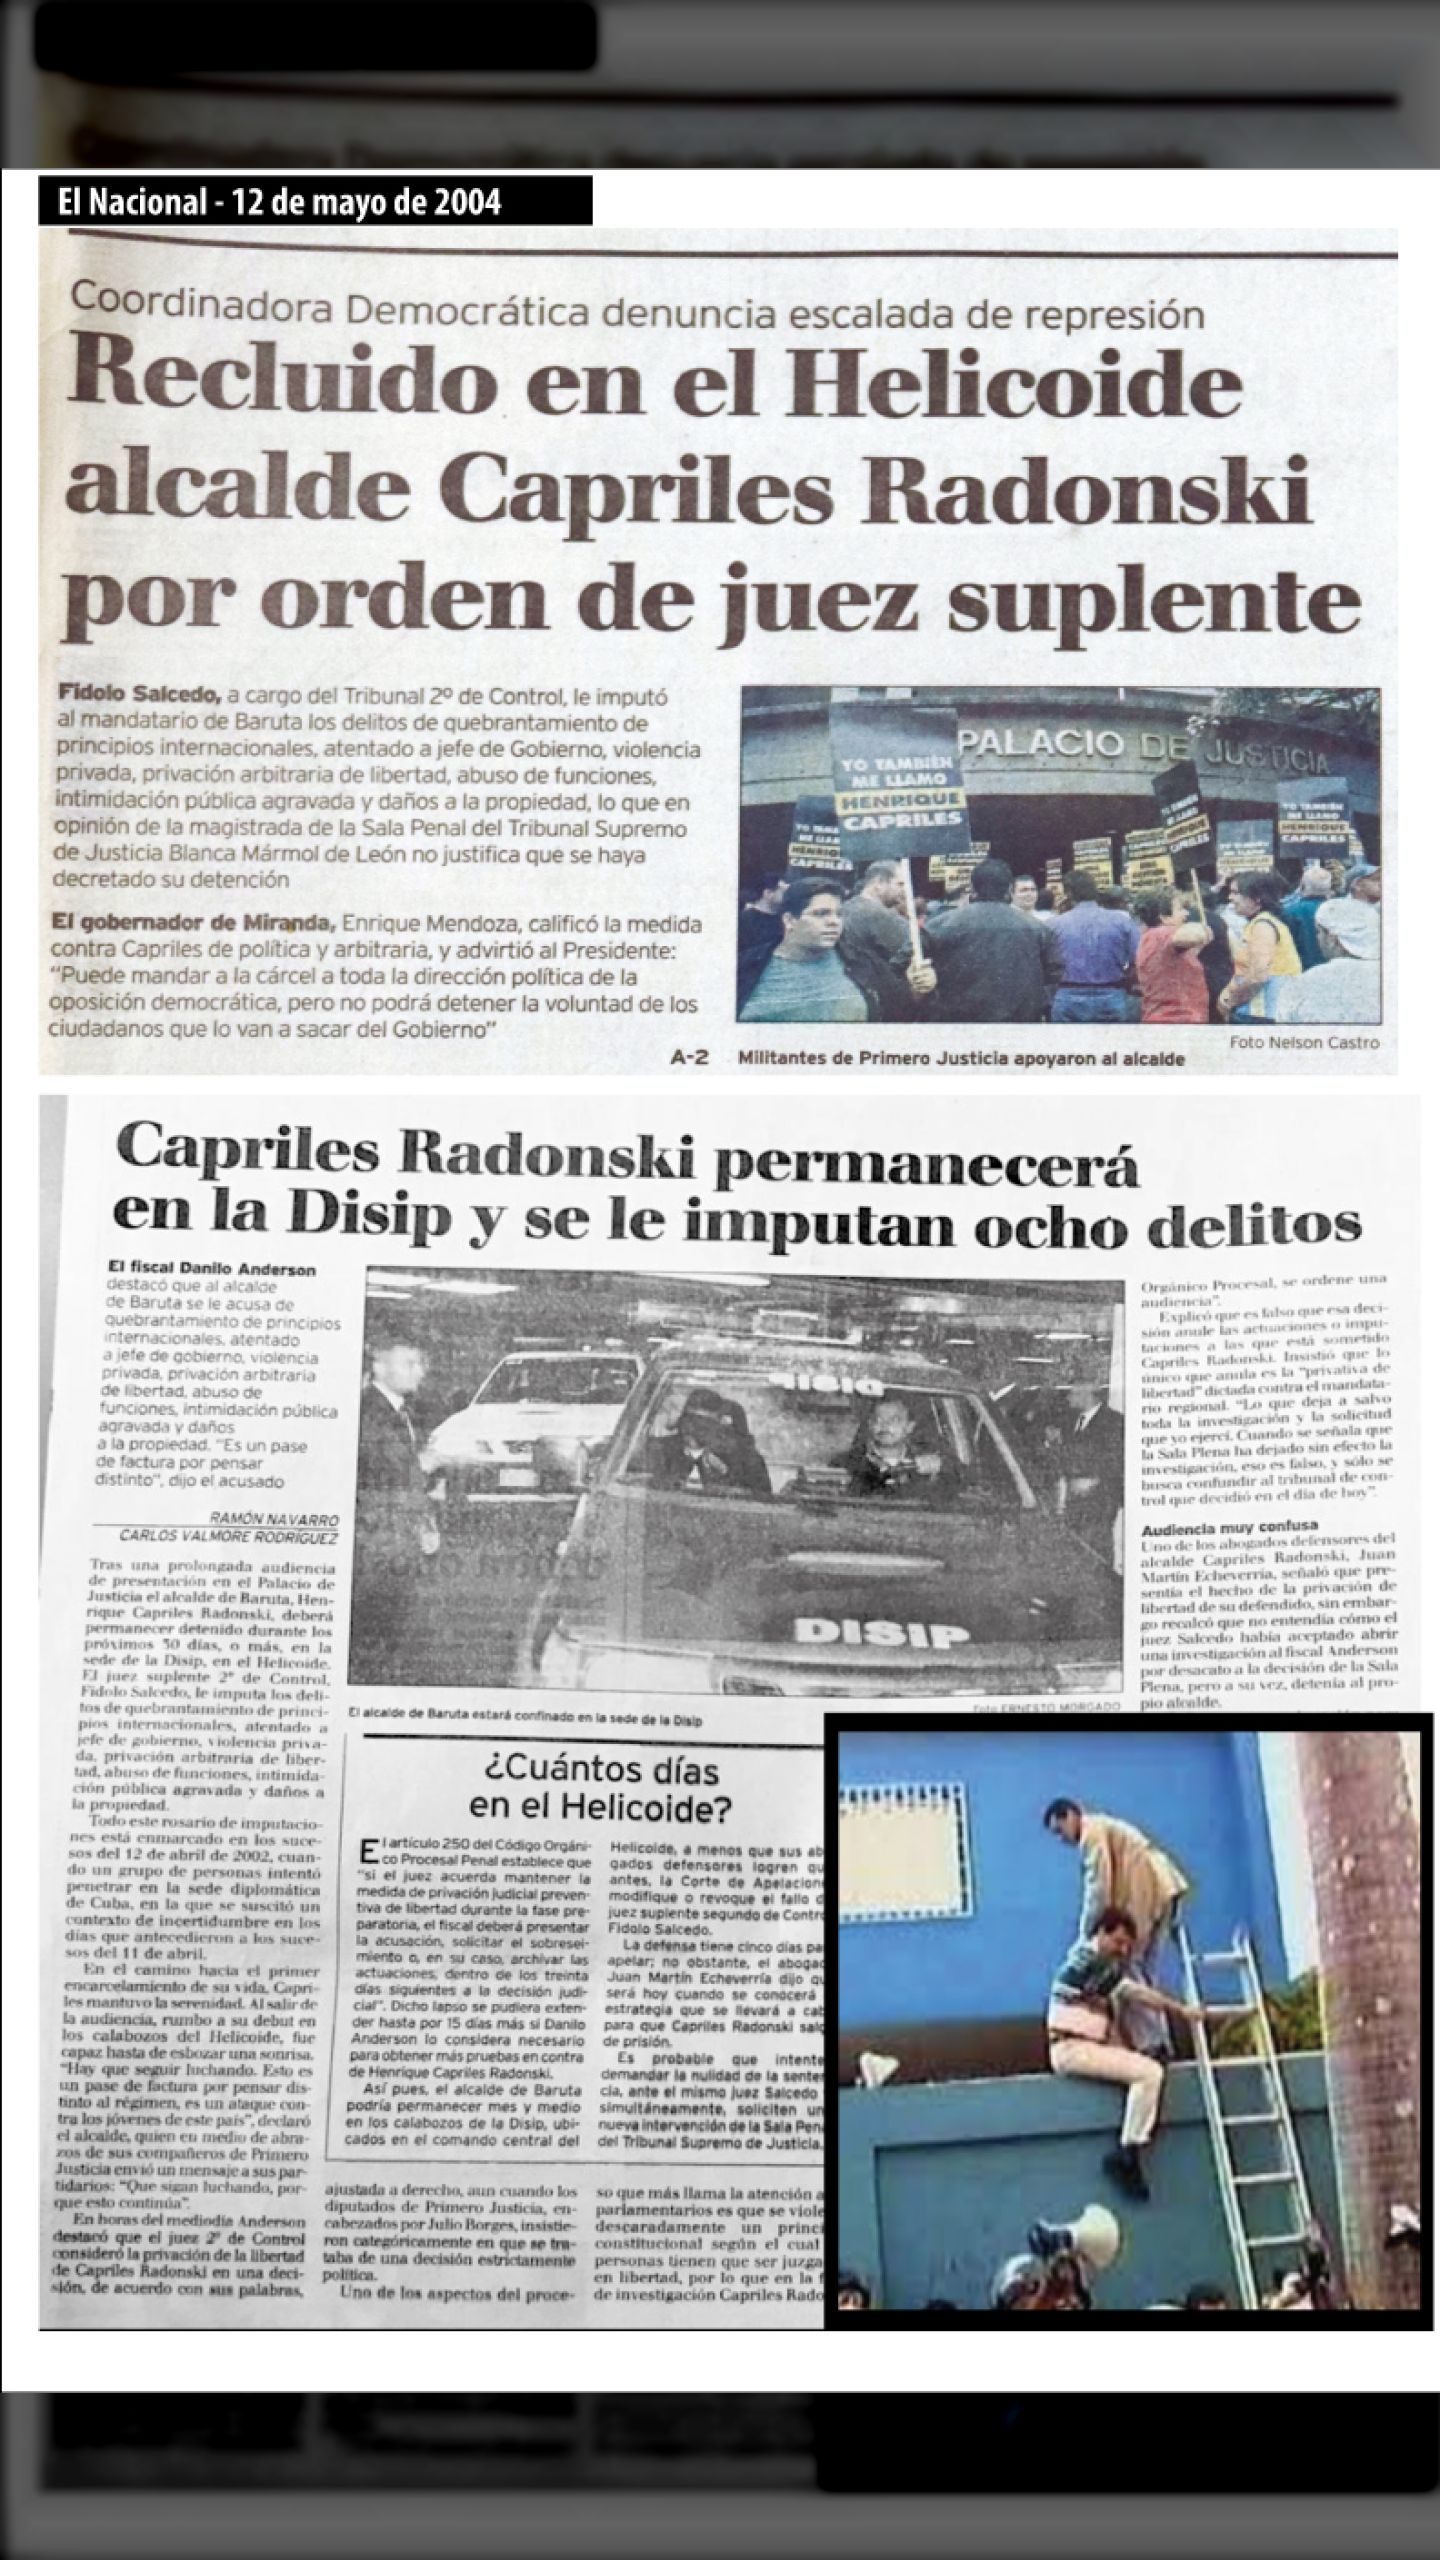 DANILO ANDERSON IMPUTÓ OCHO DELITOS AL ALCALDE DE BARUTA HENRIQUE CAPRILES RADONSKY (EL NACIONAL, 12 DE MAYO 2004)